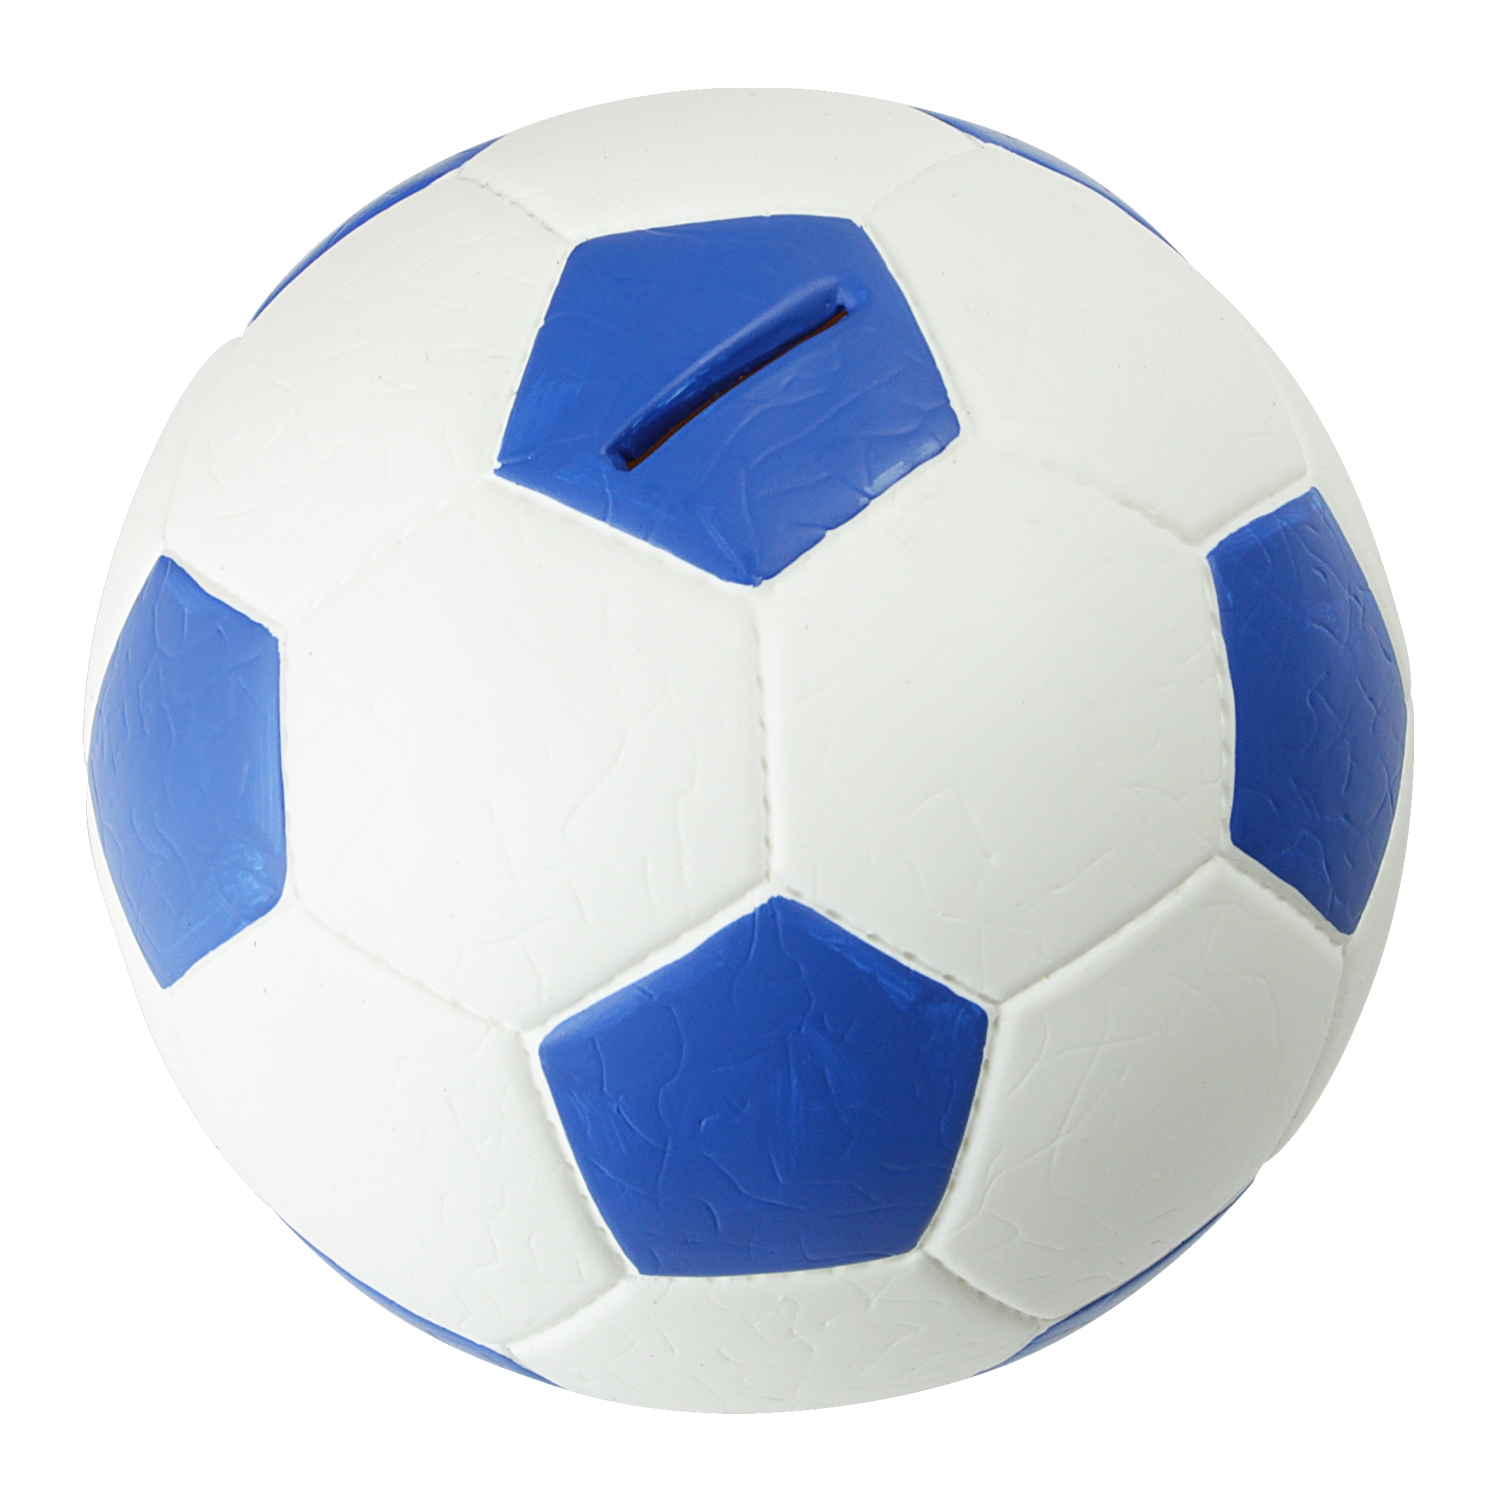 Spardose im Fußball-Look von HMF mit 15 cm Durchmesser in Blau